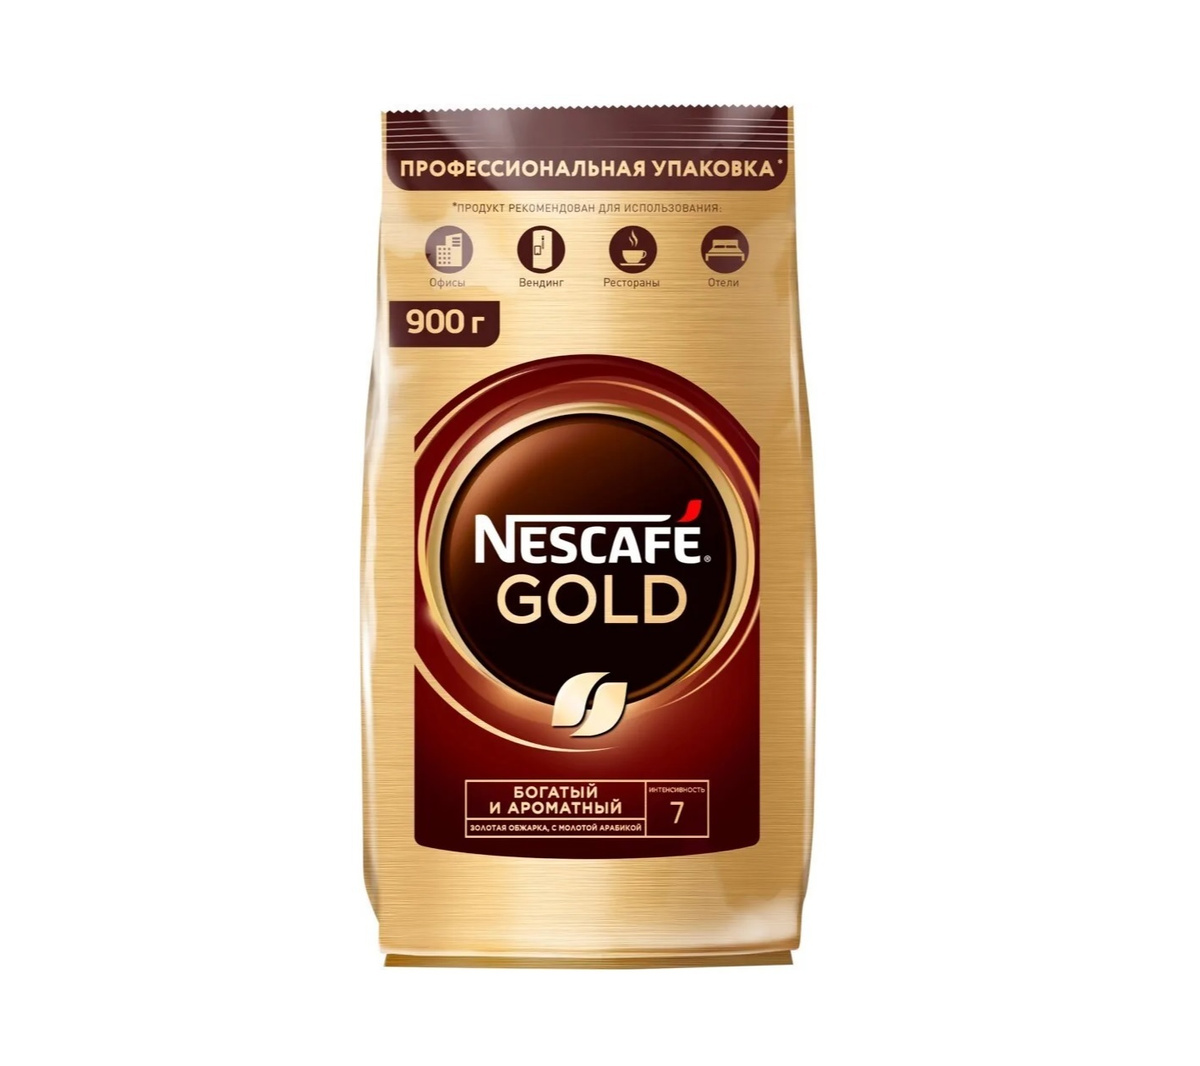 Кофе нескафе голд 320. Nescafe кофе Gold 900г.. Кофе молотый Нескафе Голд. Кофе Нескафе Голд пакет 320г. Кофе растворимый Нескафе Голд 320г м/у.